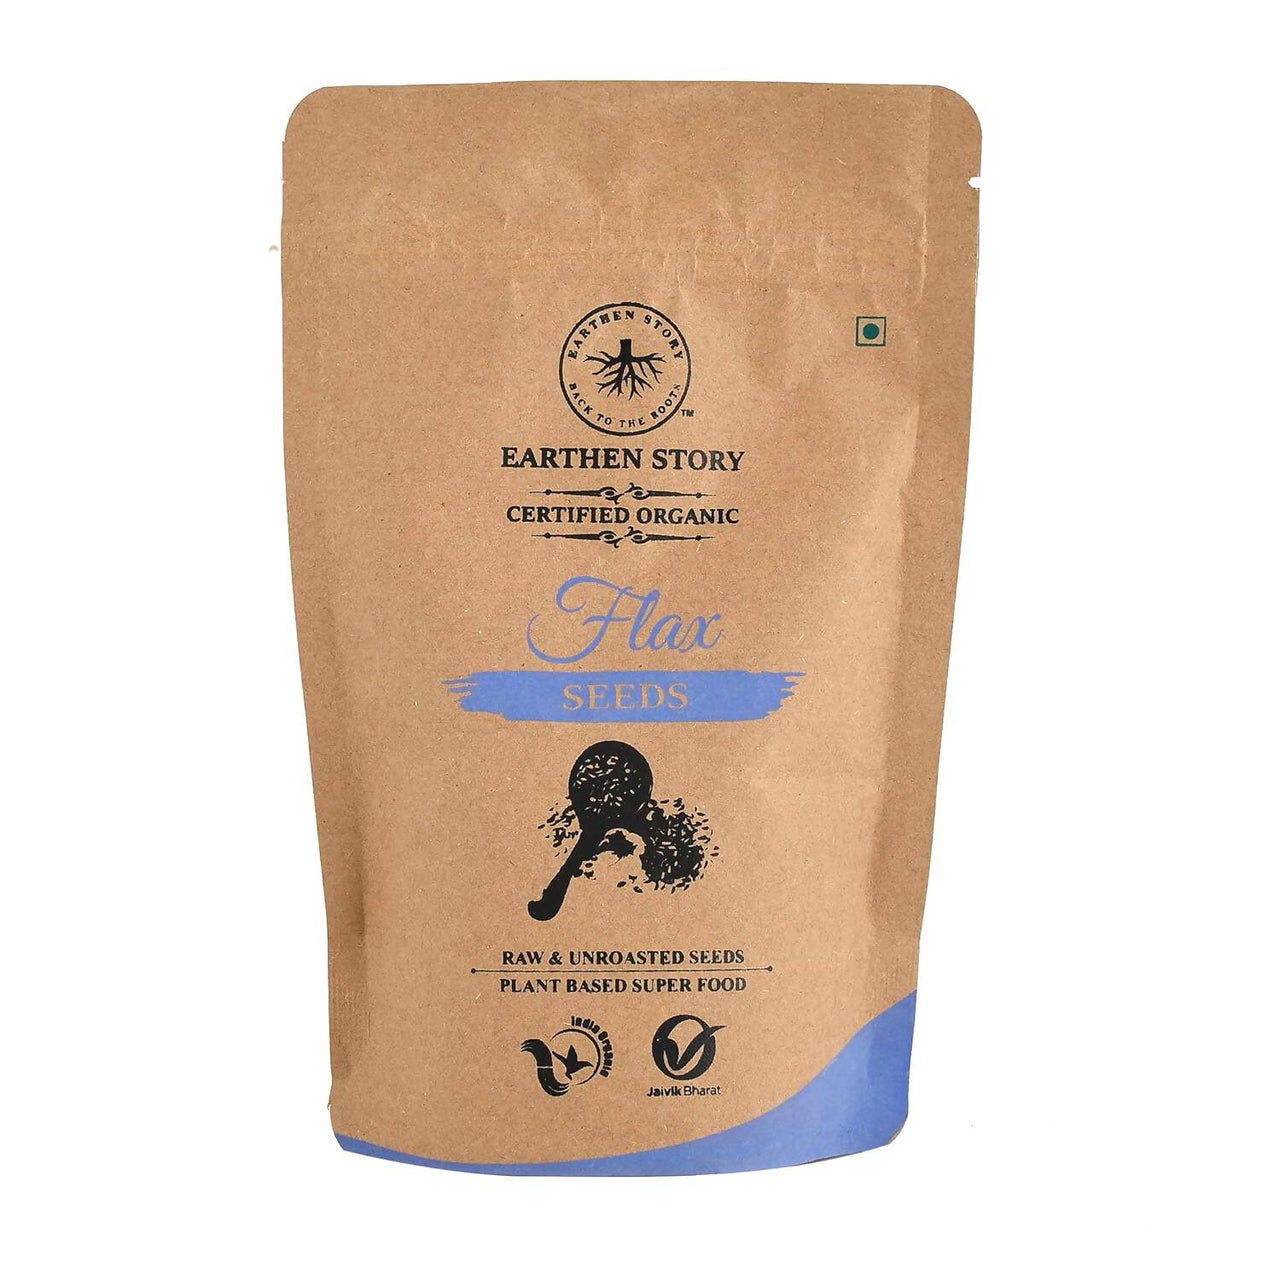 Earthen Story Certified Organic Flax Seeds - Distacart